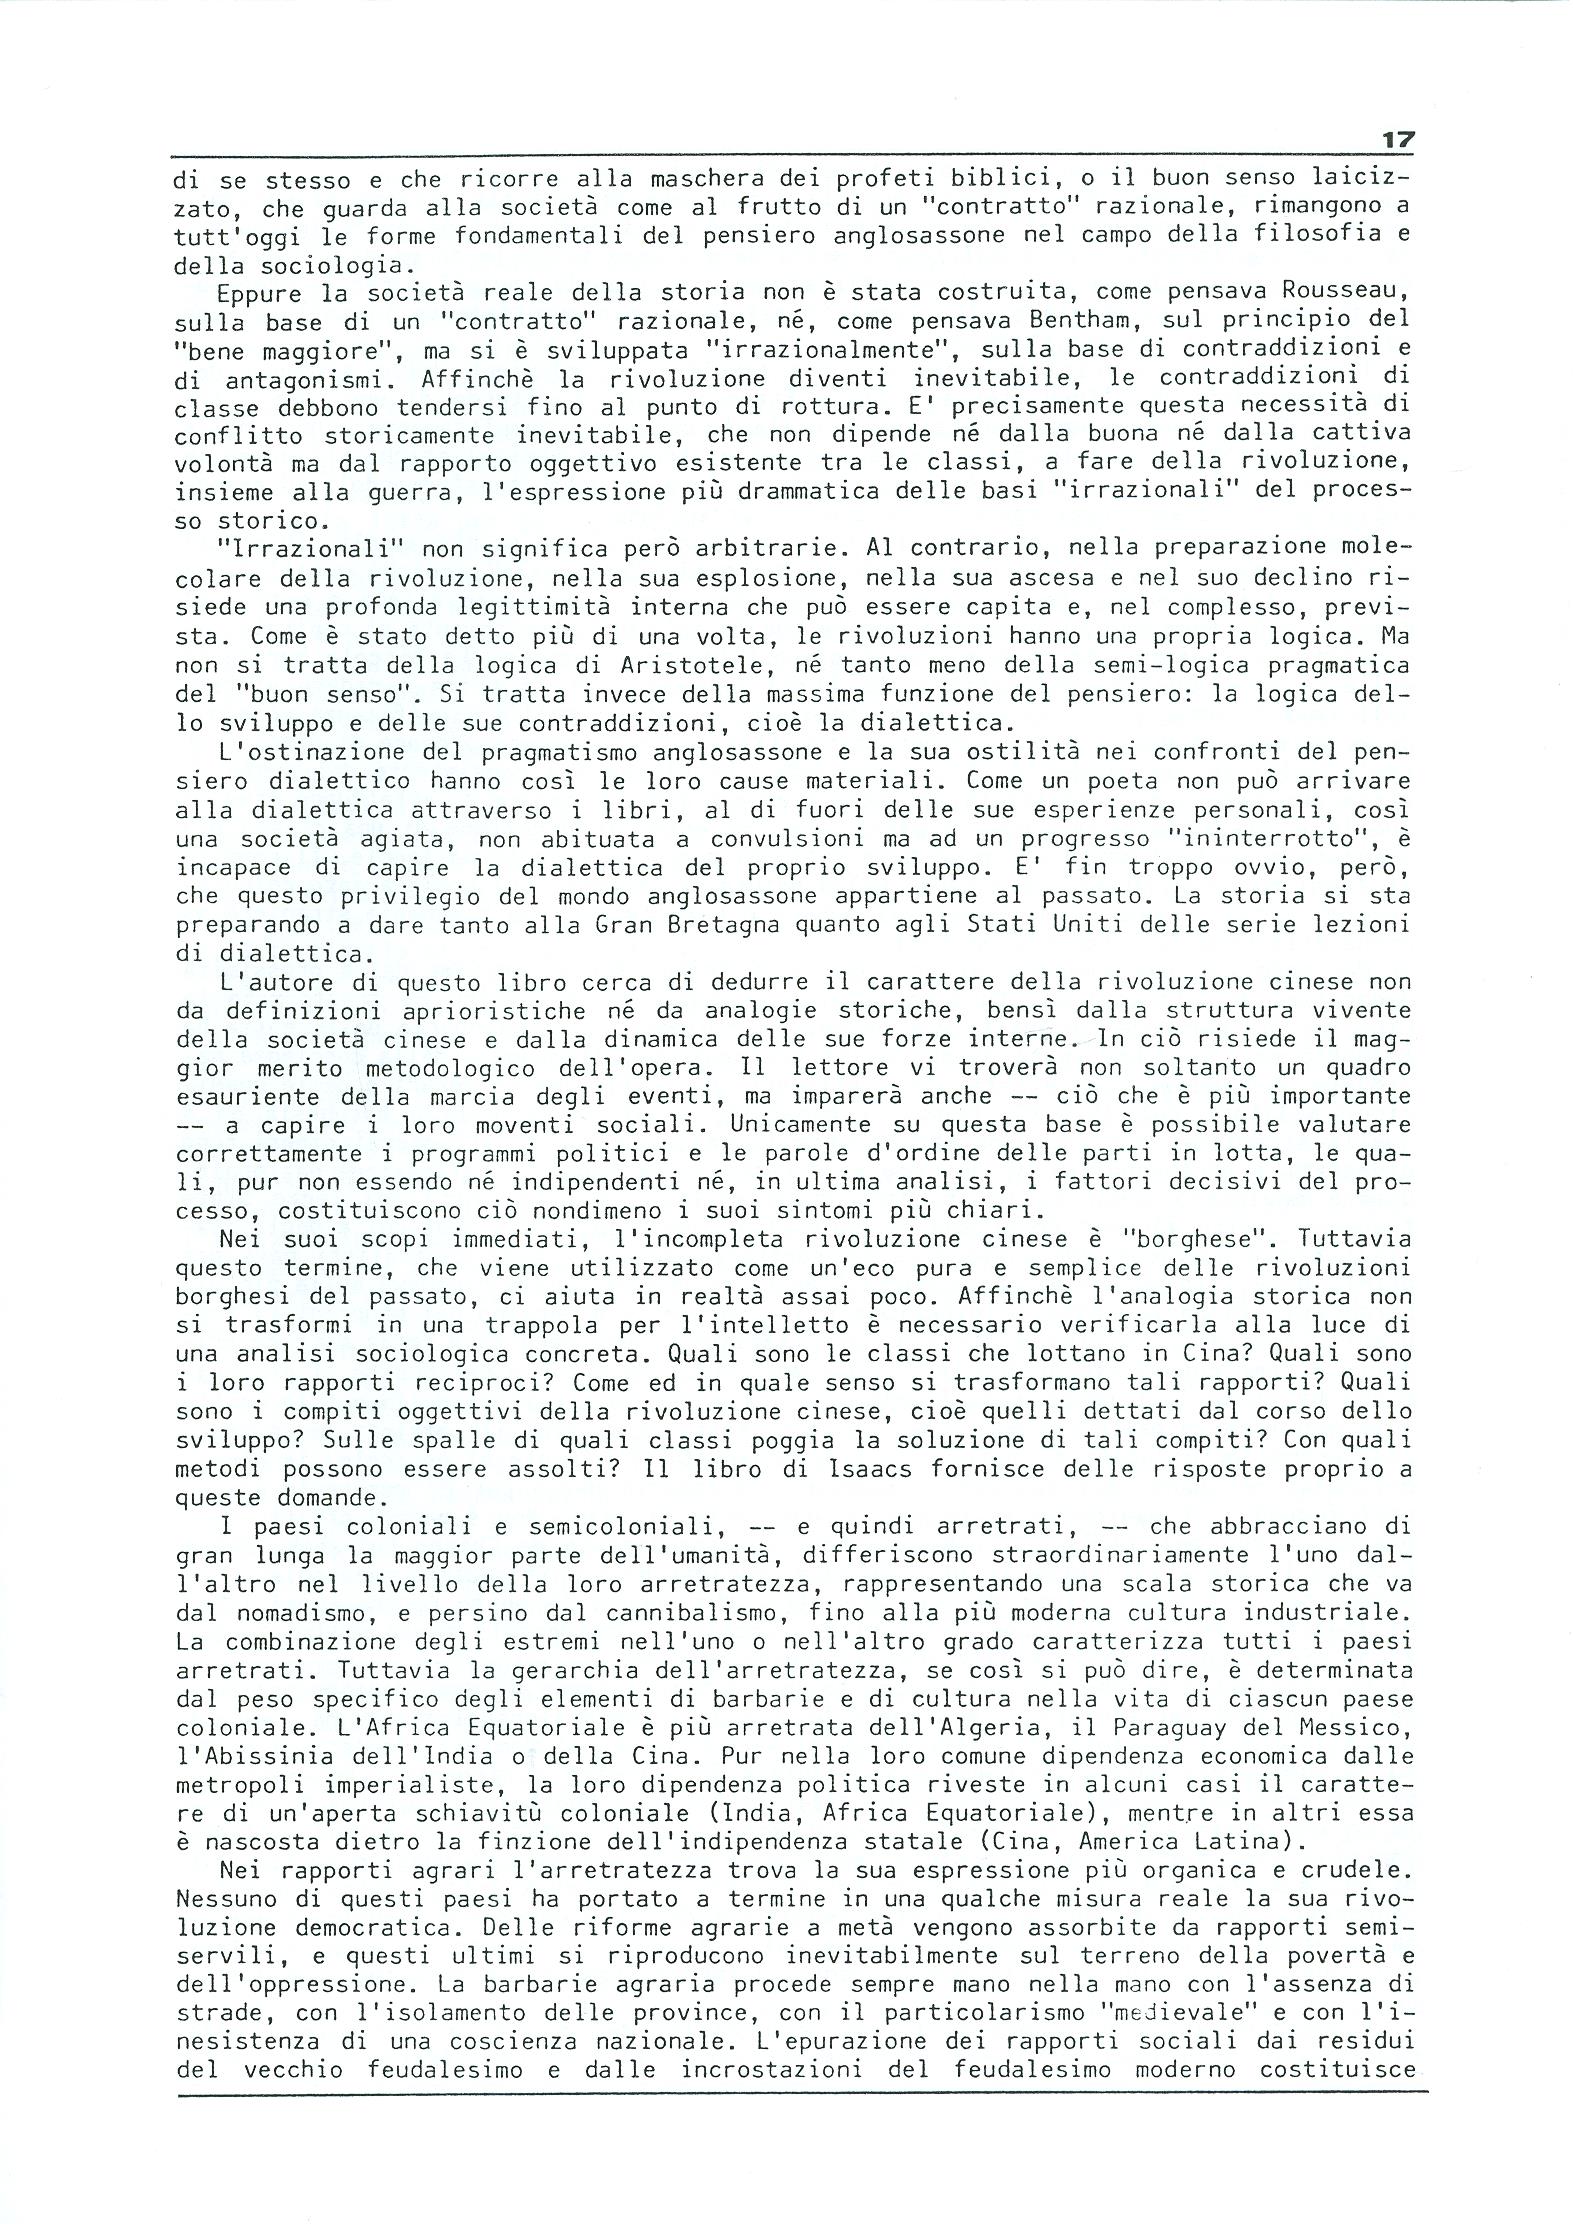 Studi e Ricerche n. 18 (aprile 1990) - pag. 17